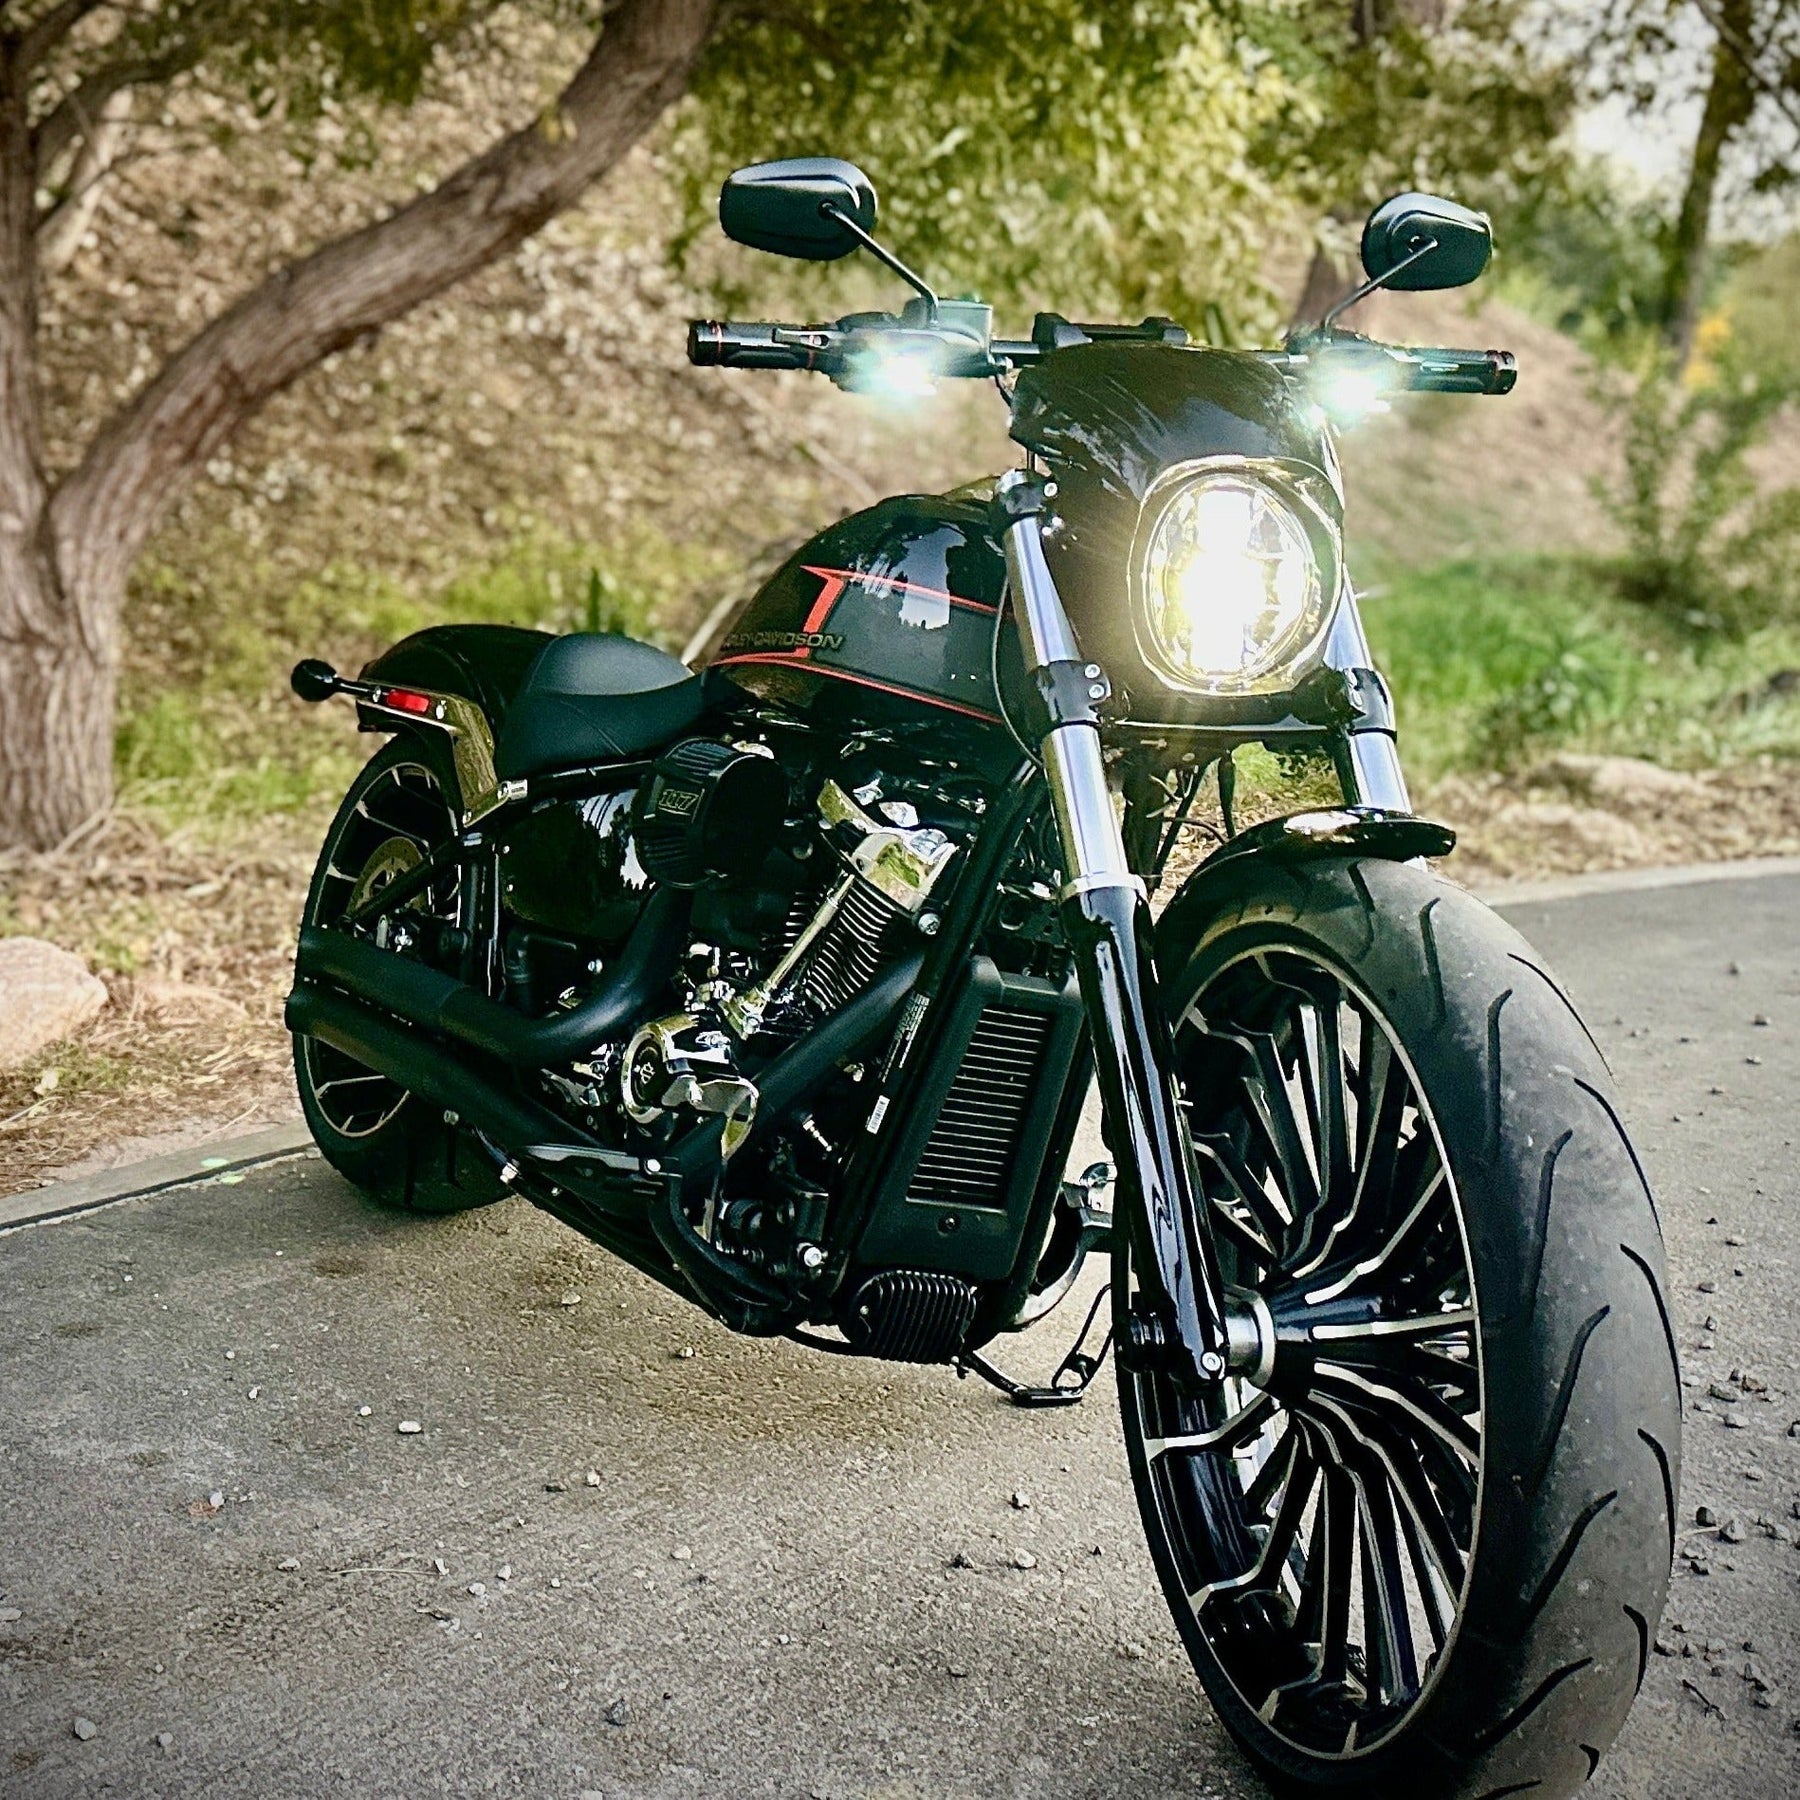 Eagle Lights Slimline LED Turn Signals for Harley Davidson Motorcycles - Black